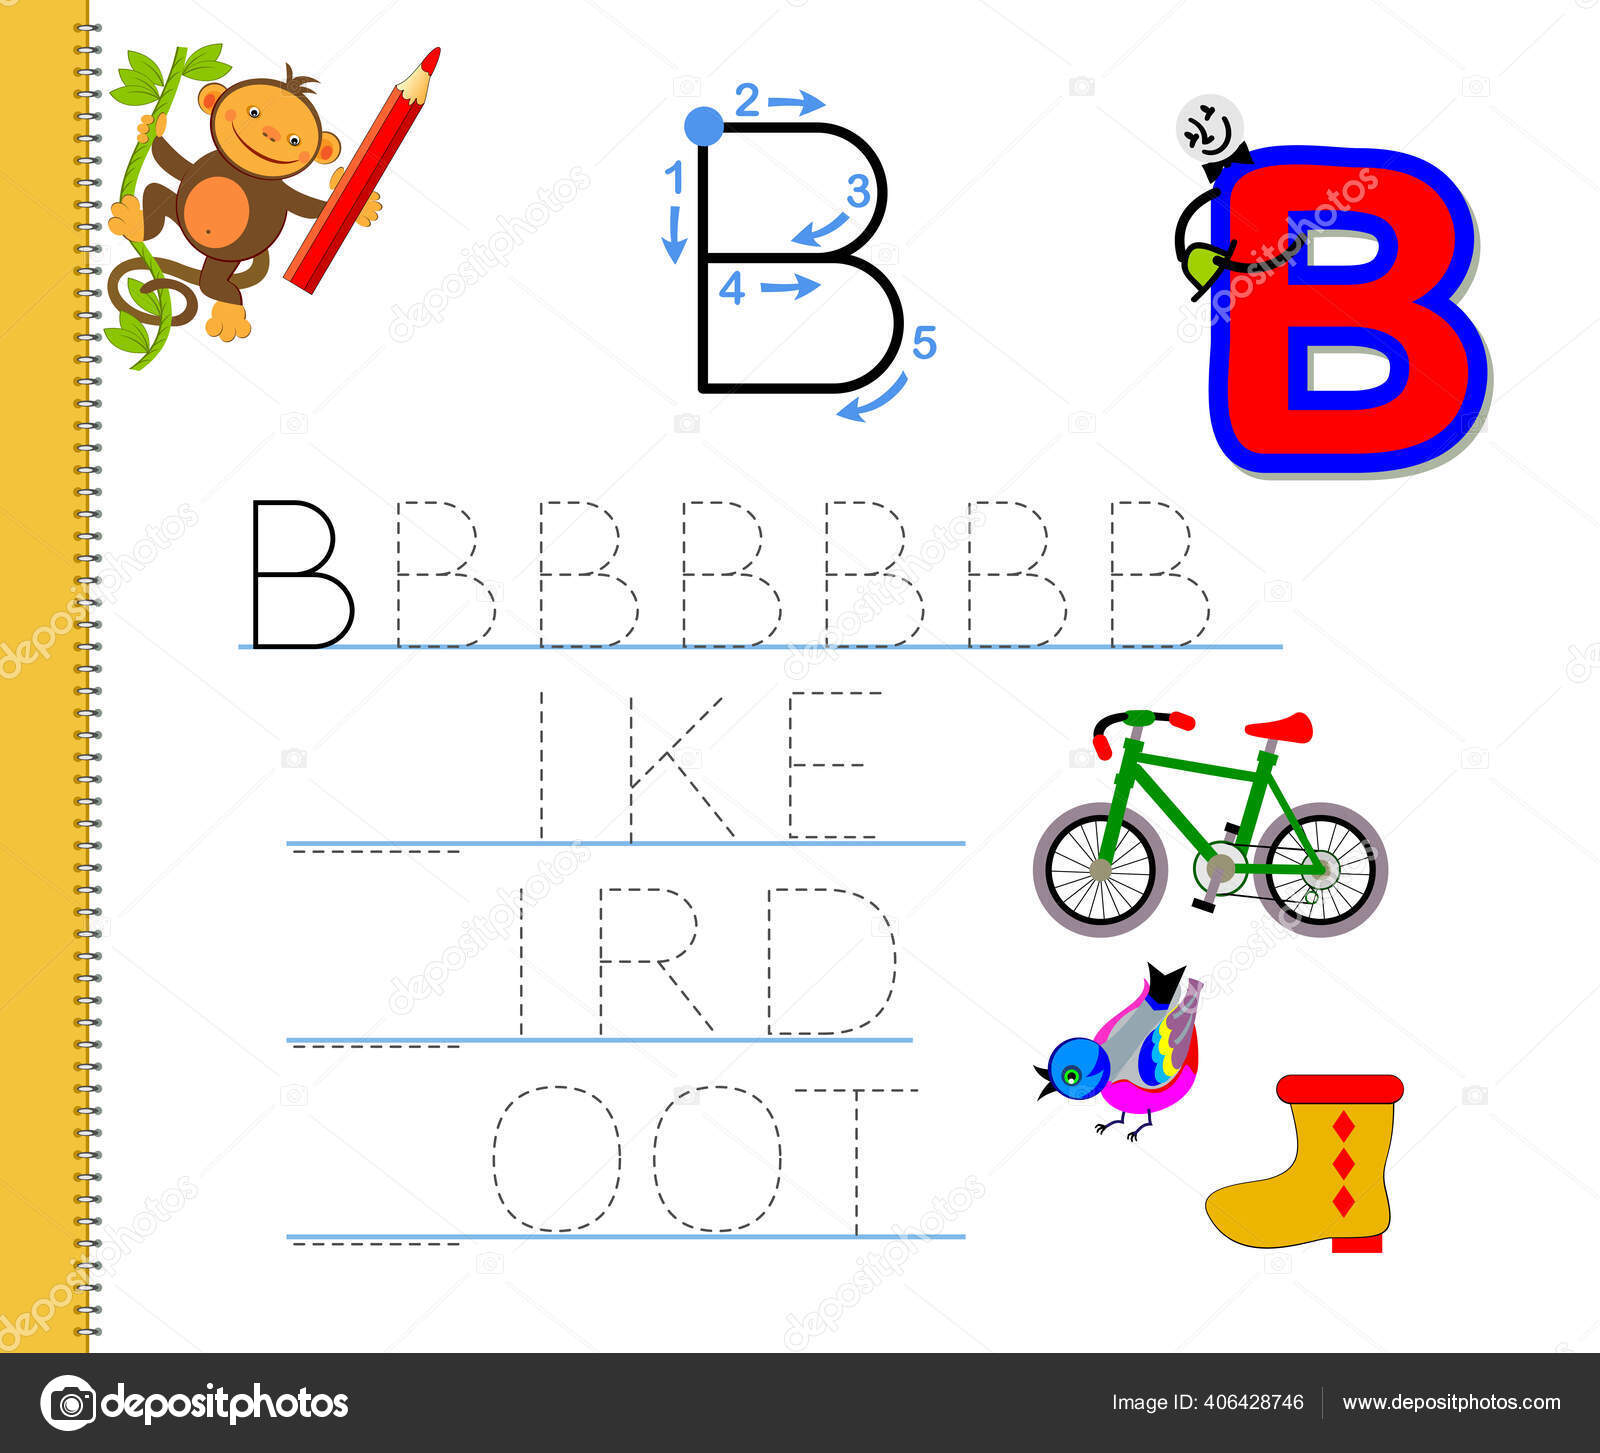 Jeu de l'alphabet pour maternelle : Apprendre les lettres ABC # 1